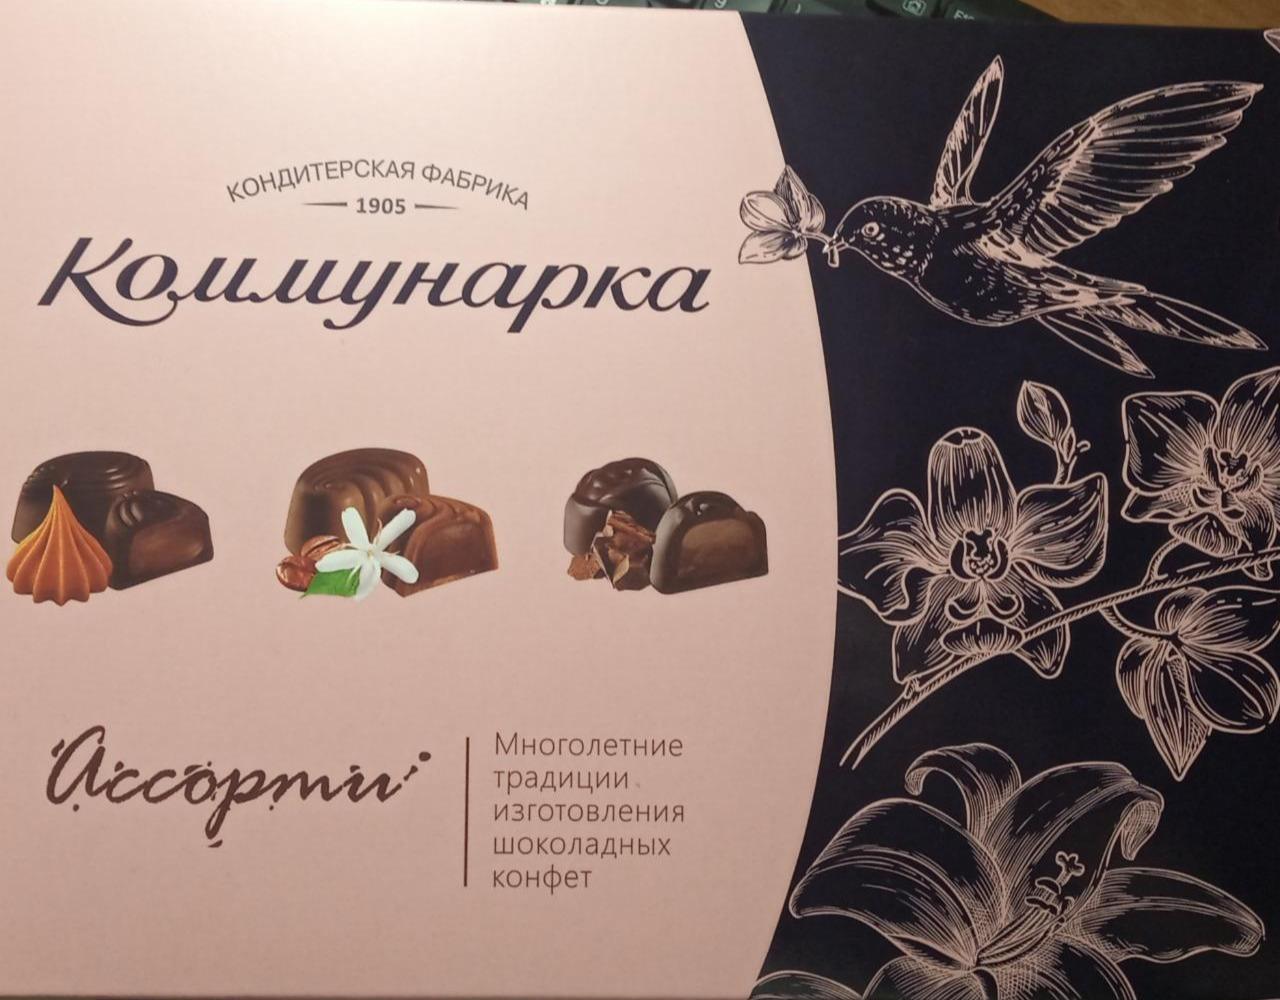 Фото - Набор конфет Ассорти Коммунарка